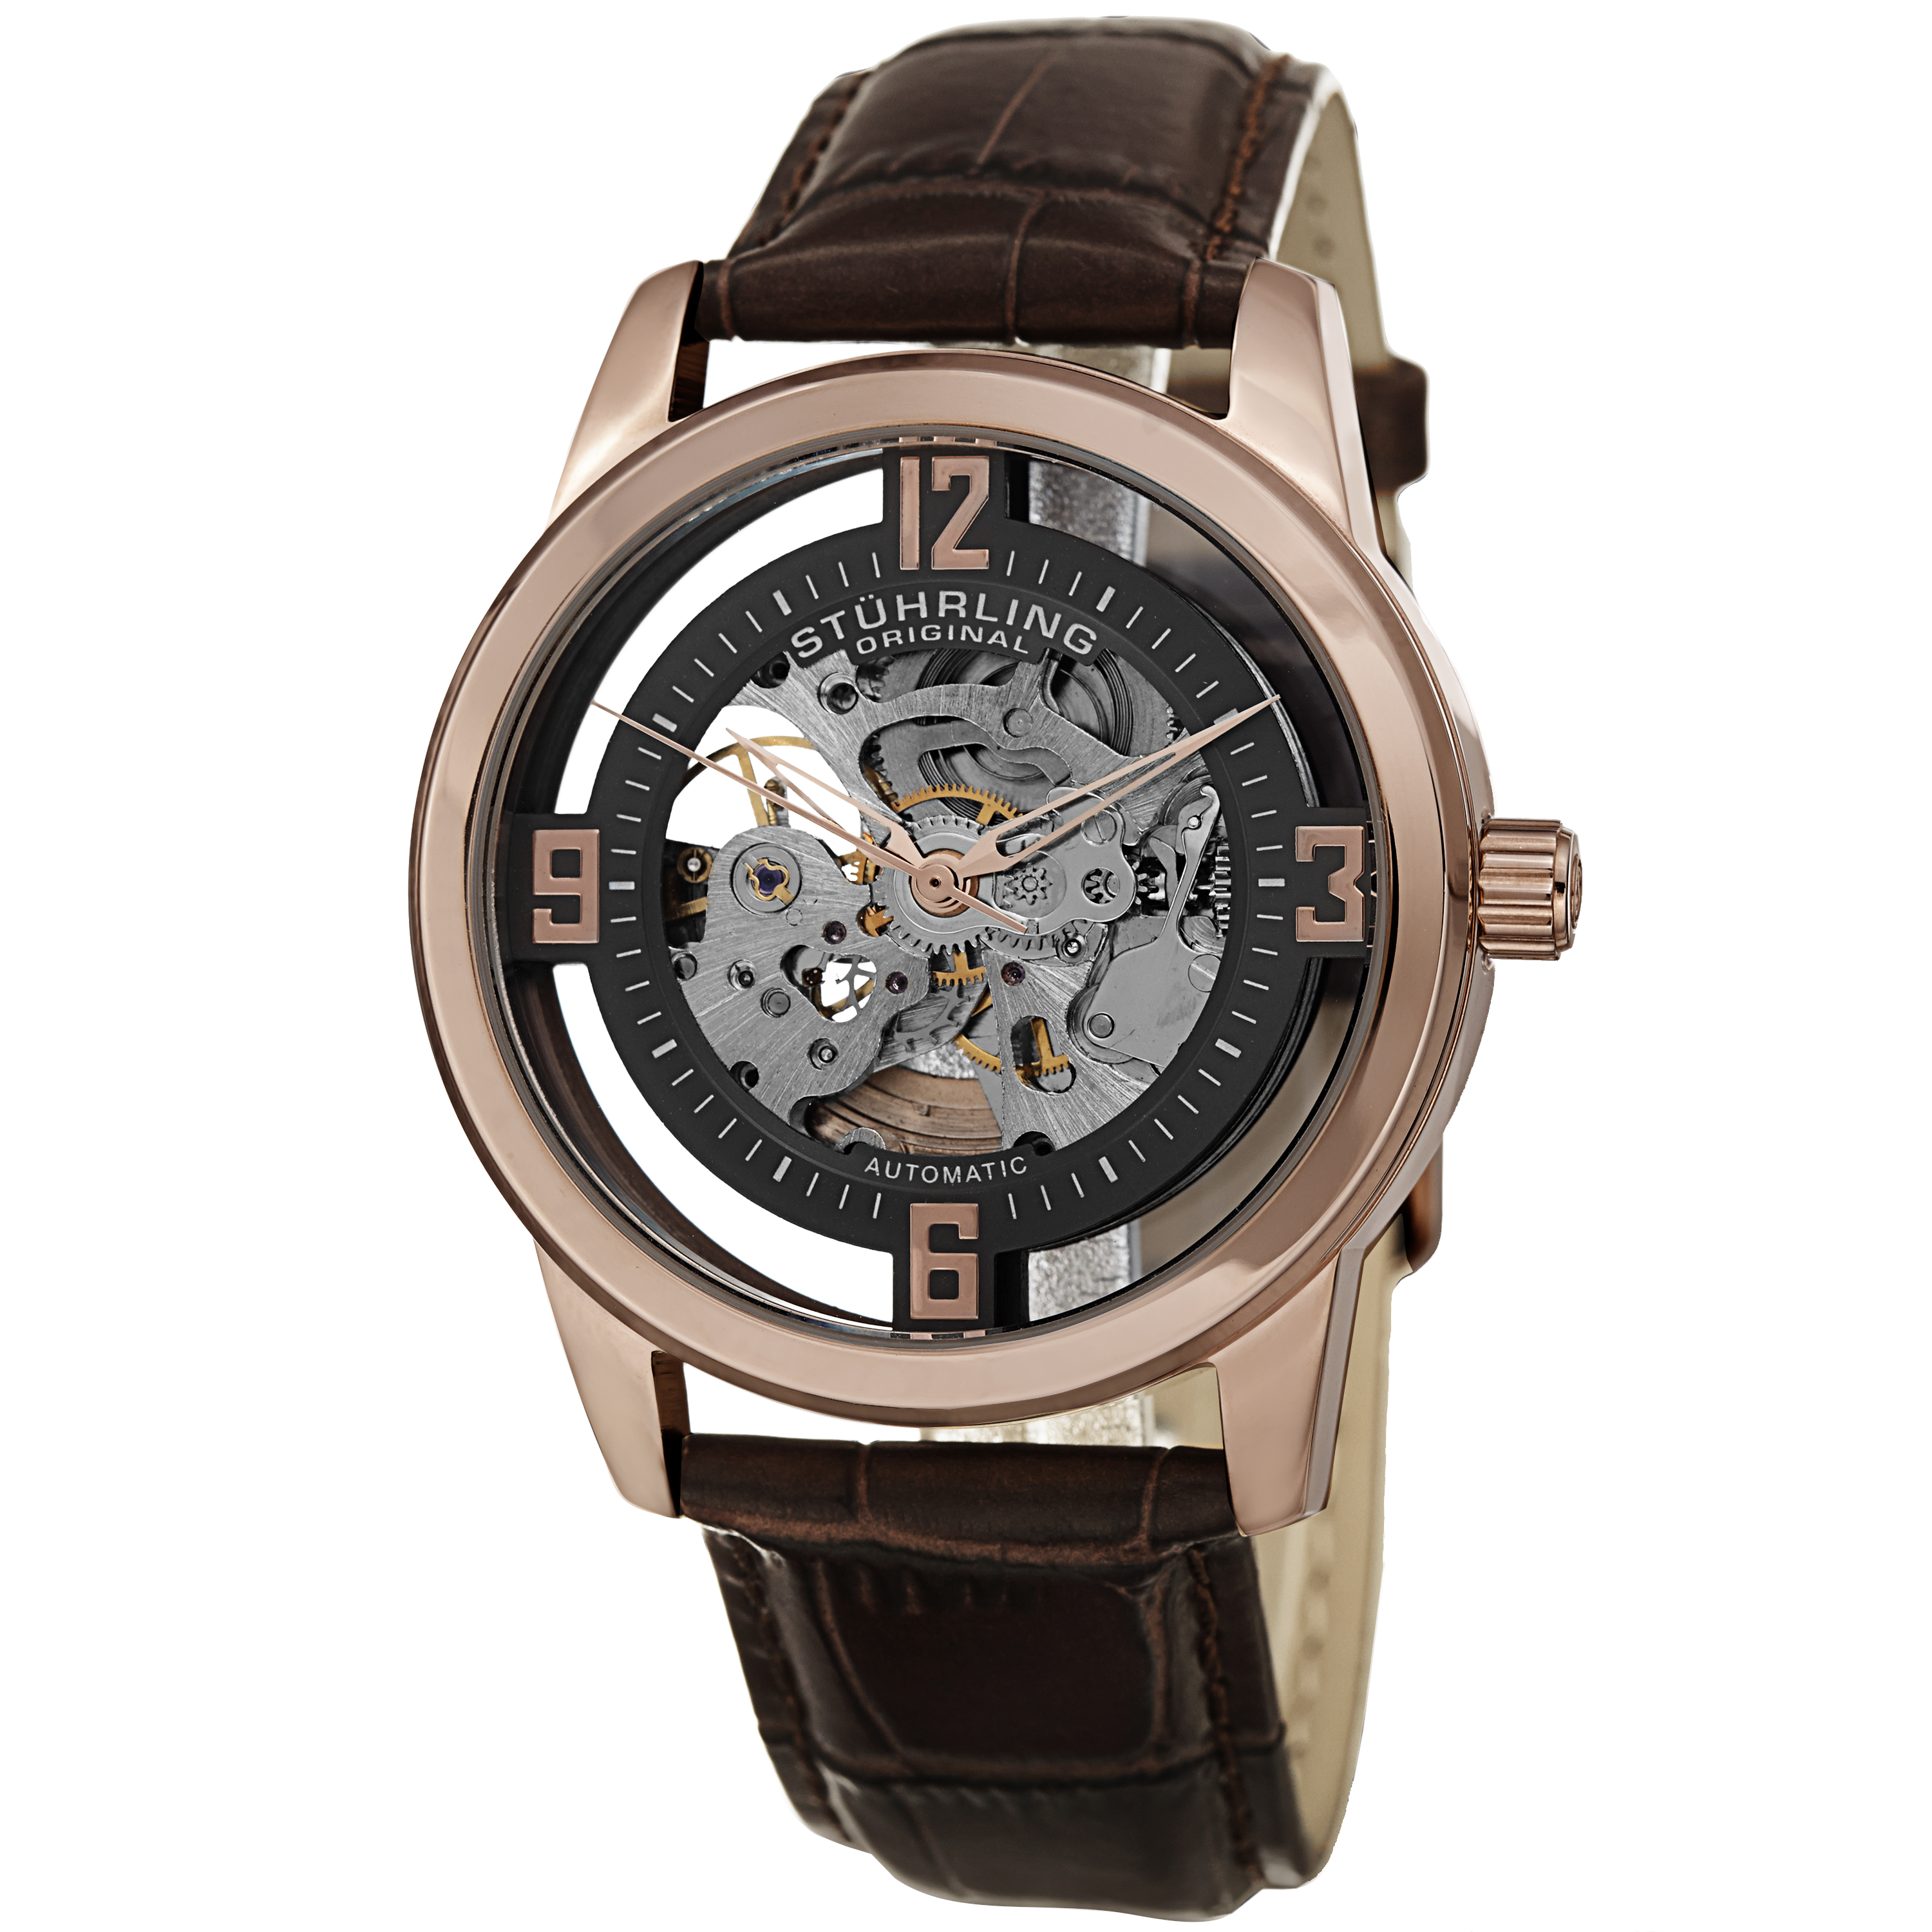 Stuhrling Legacy Men's Watch Model 877.05